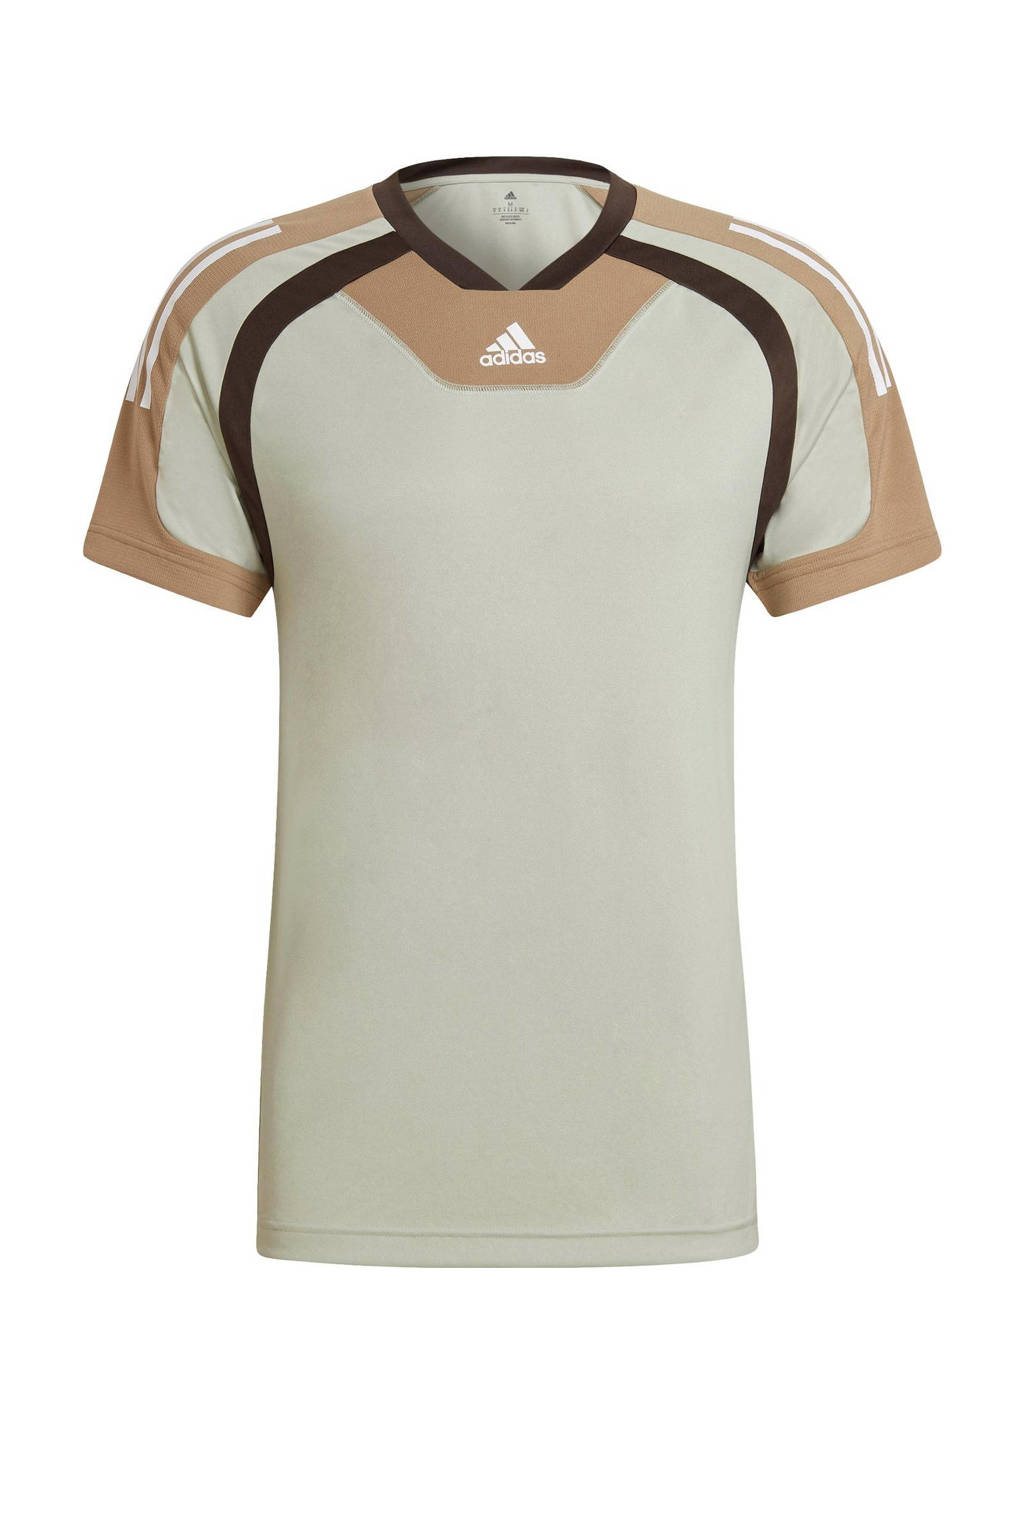 adidas Performance   sport T-shirt lichtgroen/bruin/wit